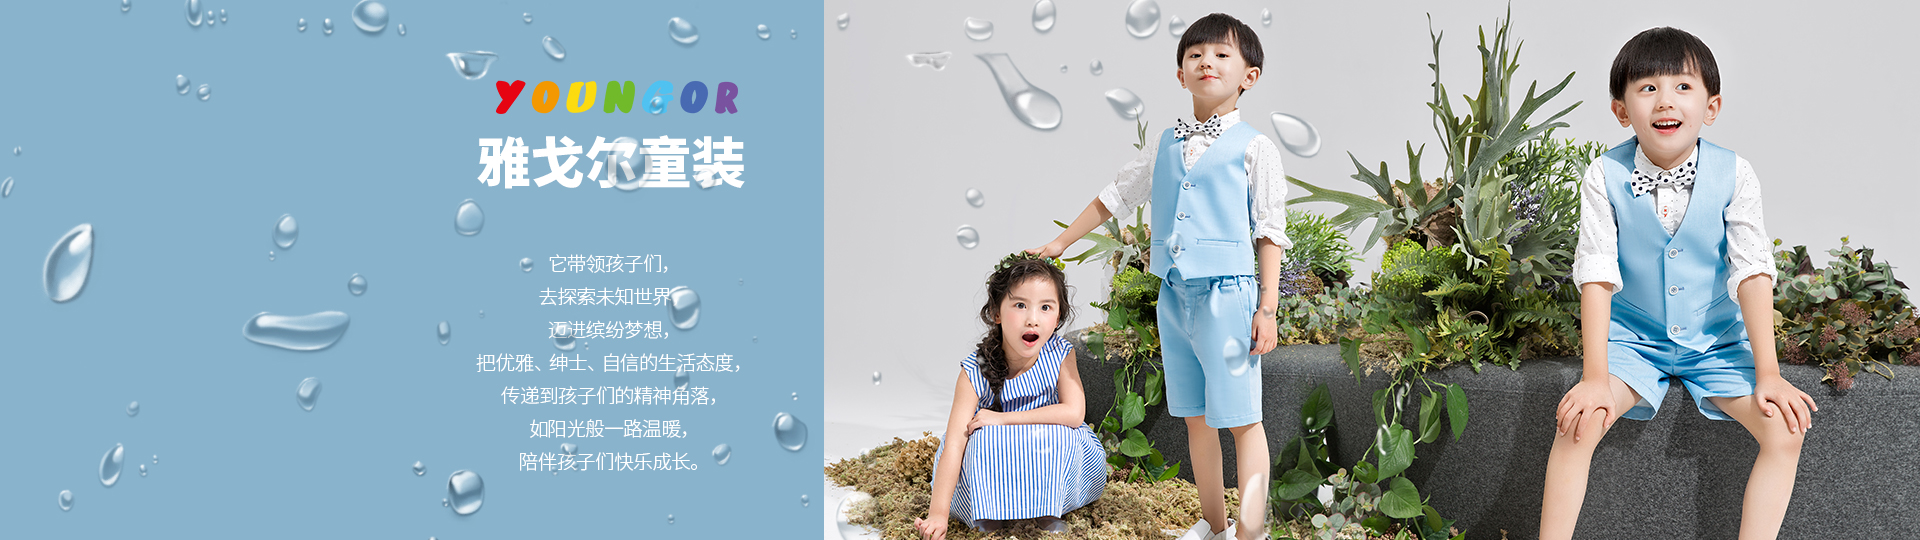 天猫"雅戈尔官方旗舰店",童装二级页海报,用了春天的模特加雨水增添